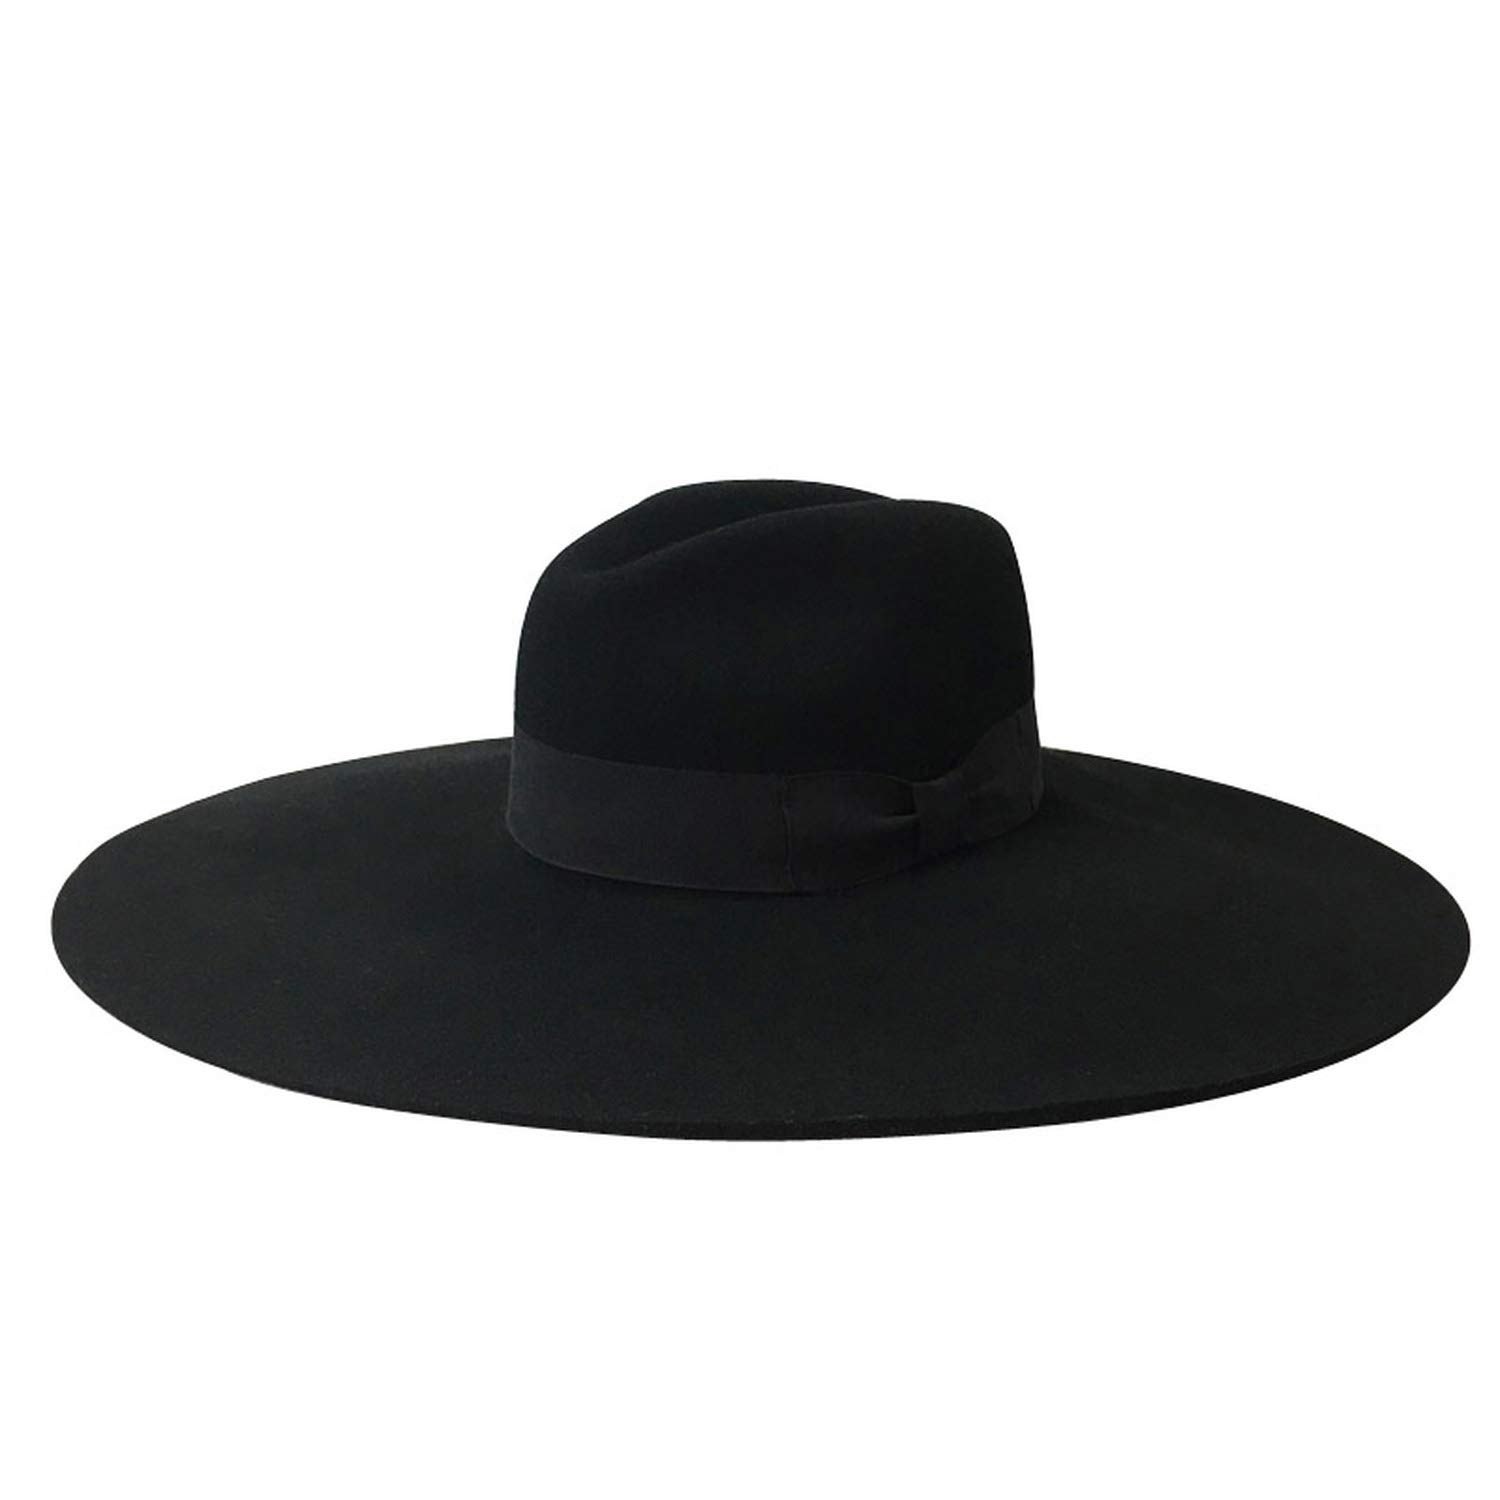 Большие черные шляпы. Шляпа Федора мужская широкополая. Fedora шляпа мужская широкополая. Шляпа мужская Fedora Black. Фетровая шляпа Федора.